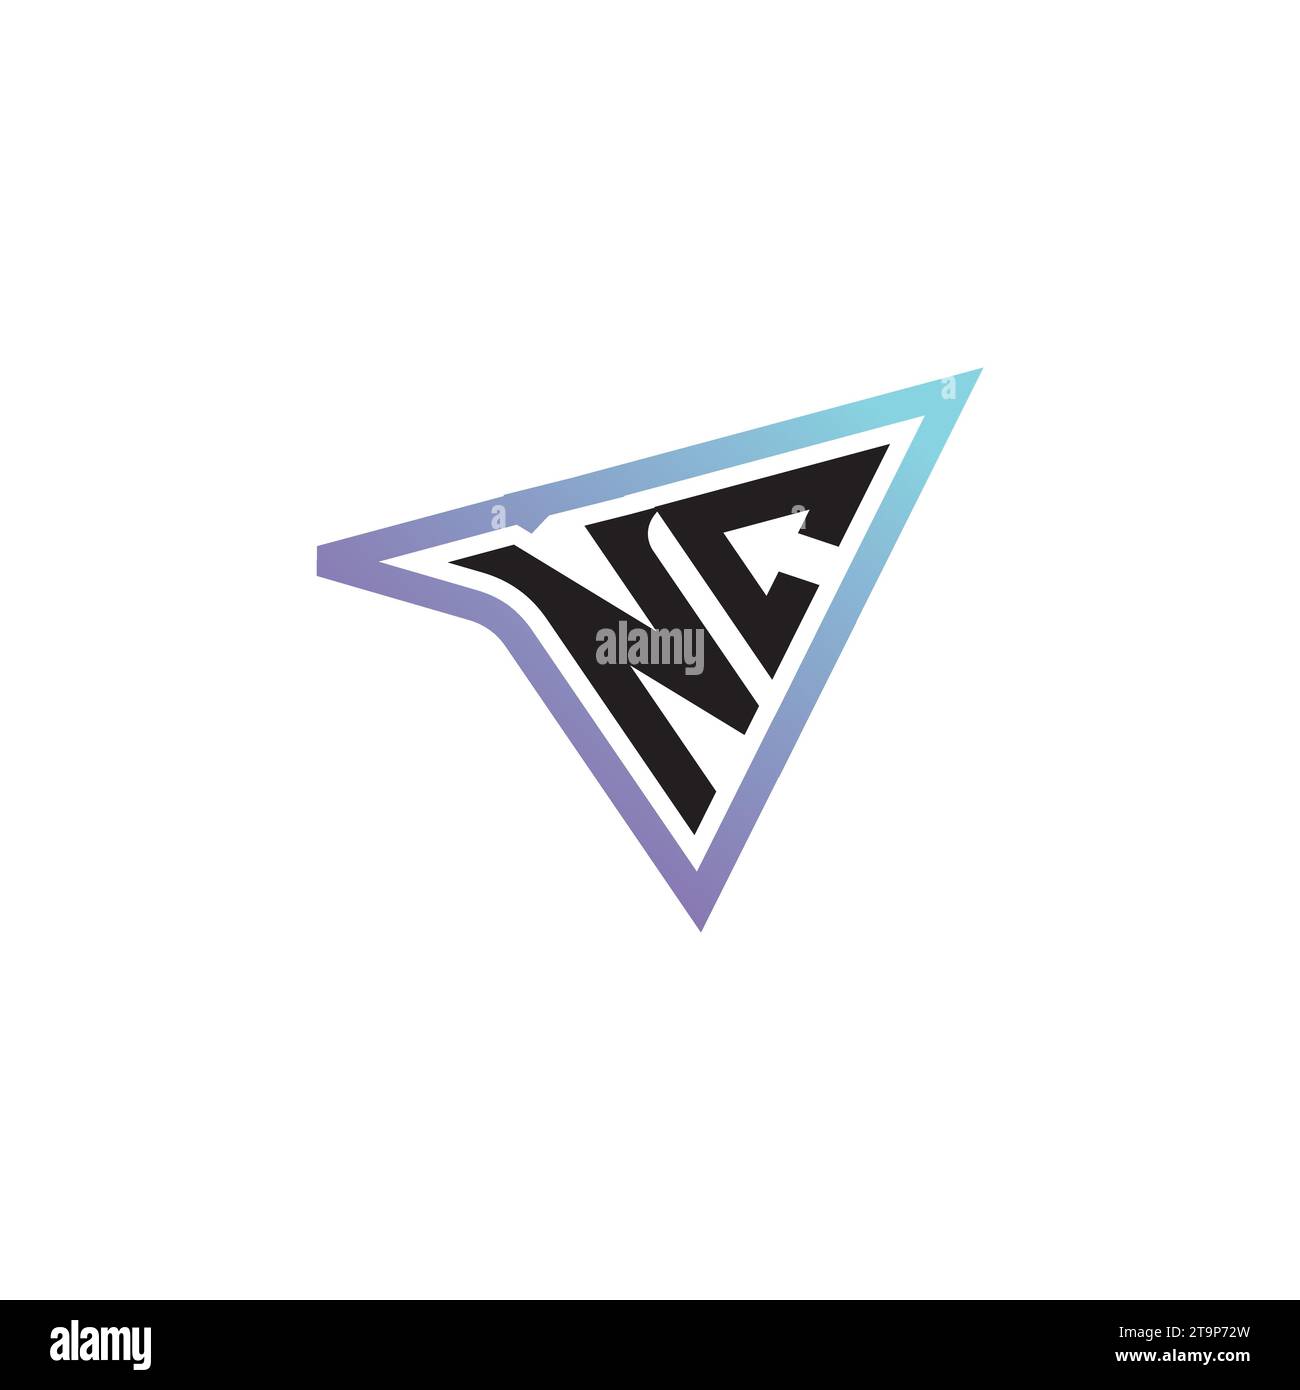 Combinazione di lettere NC, logo originale o logo iniziale per il gaming come concept design ispirativo Illustrazione Vettoriale